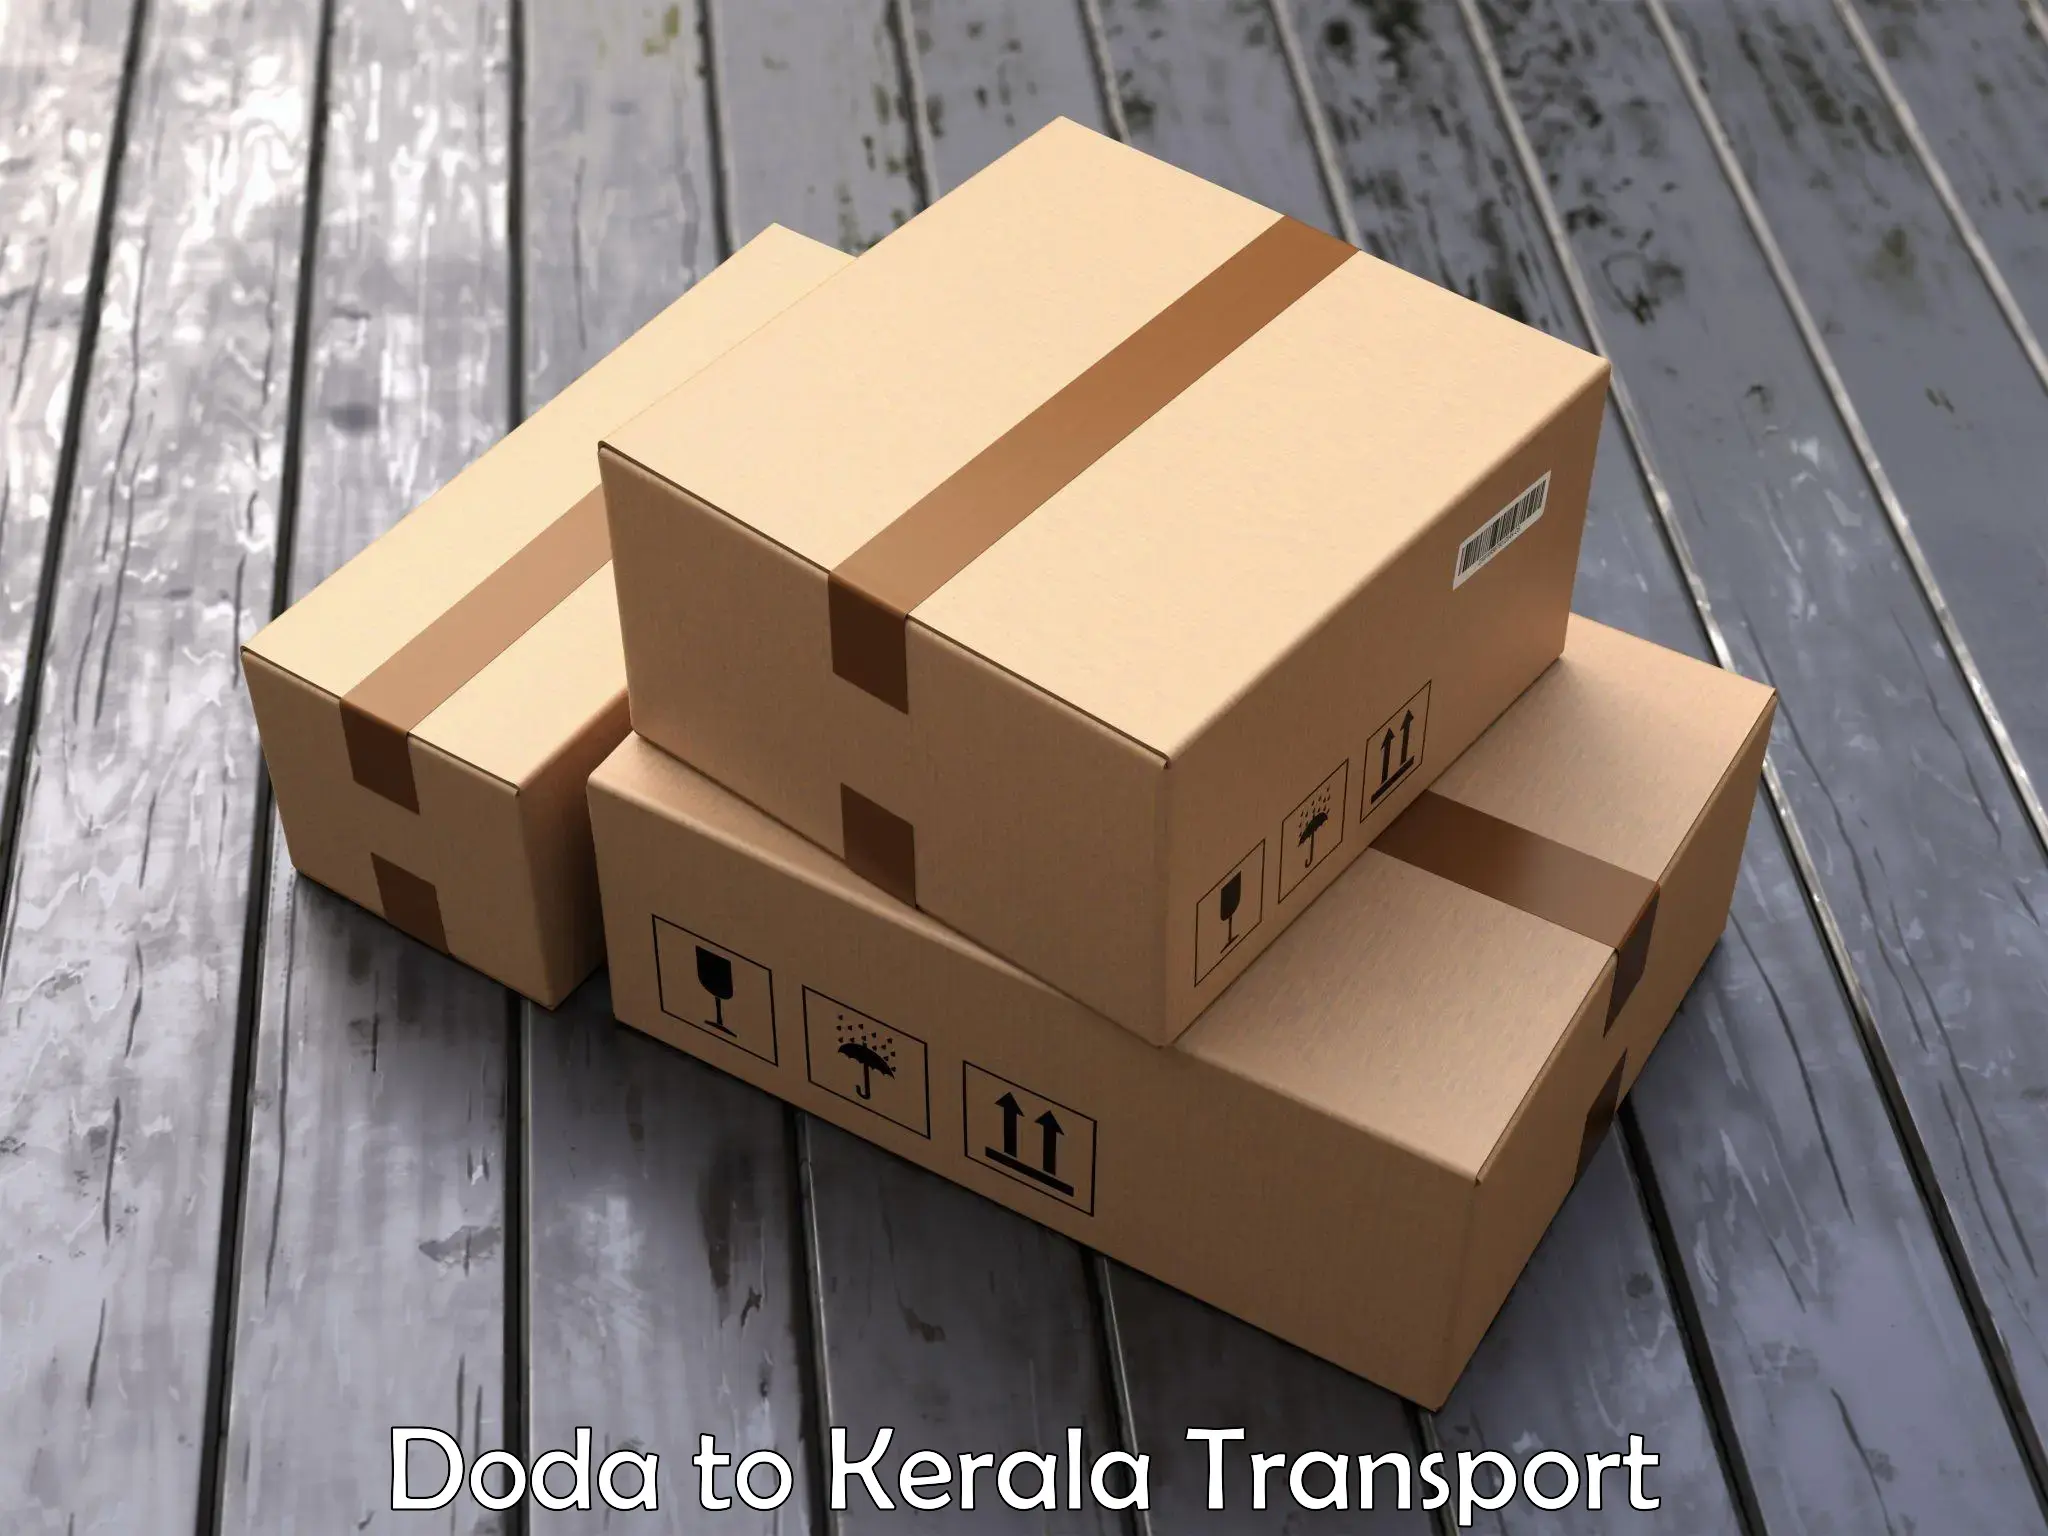 Air freight transport services Doda to Kalpetta